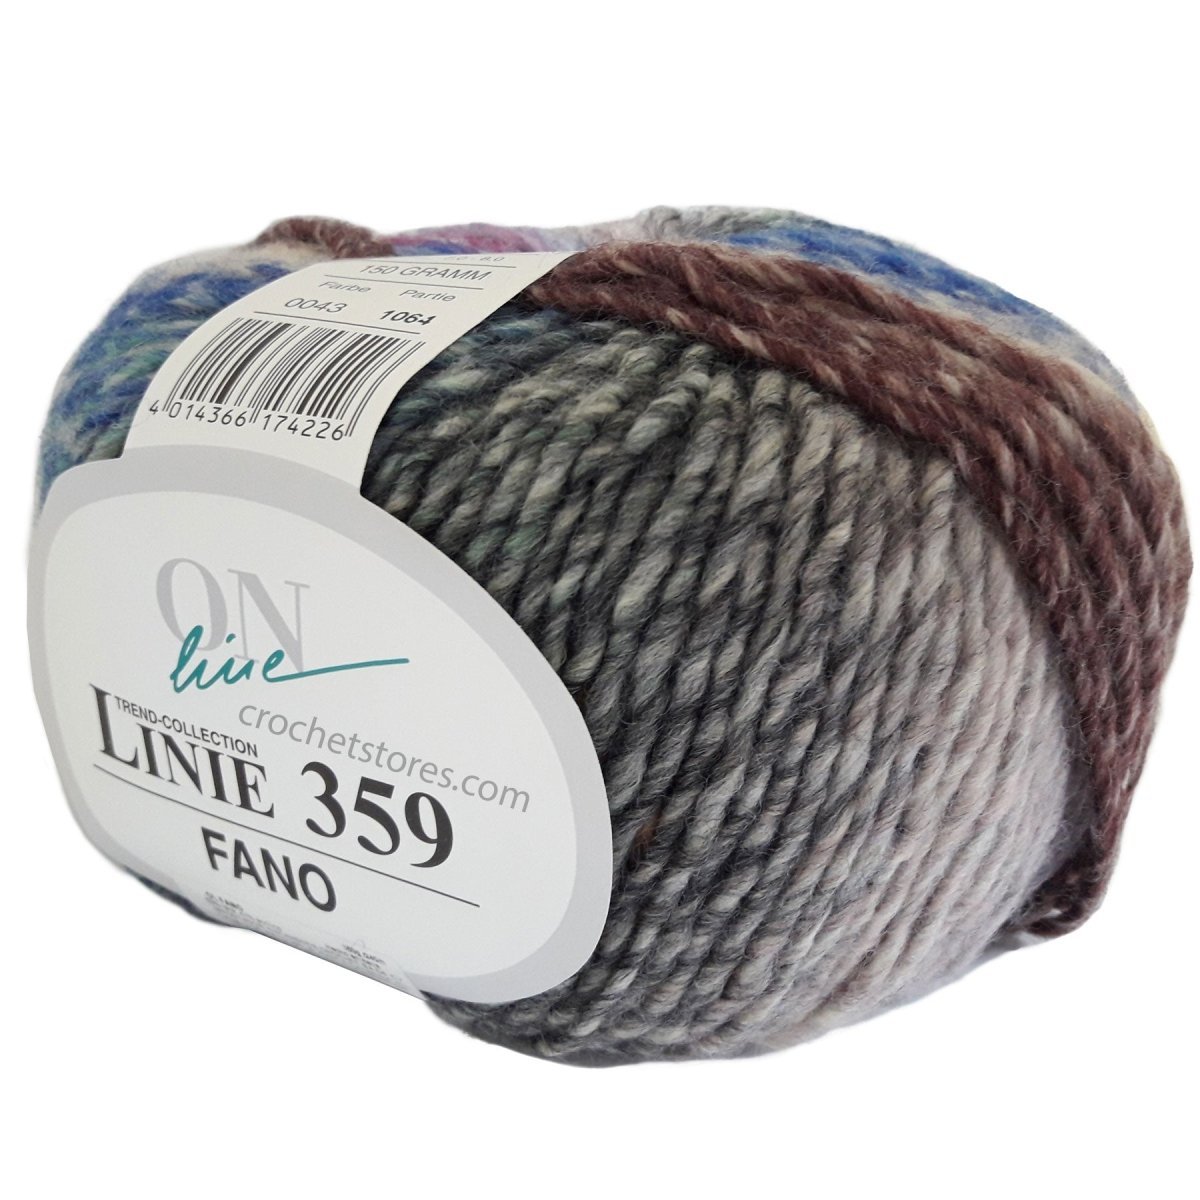 FANO - Crochetstores110359-0434014366174226